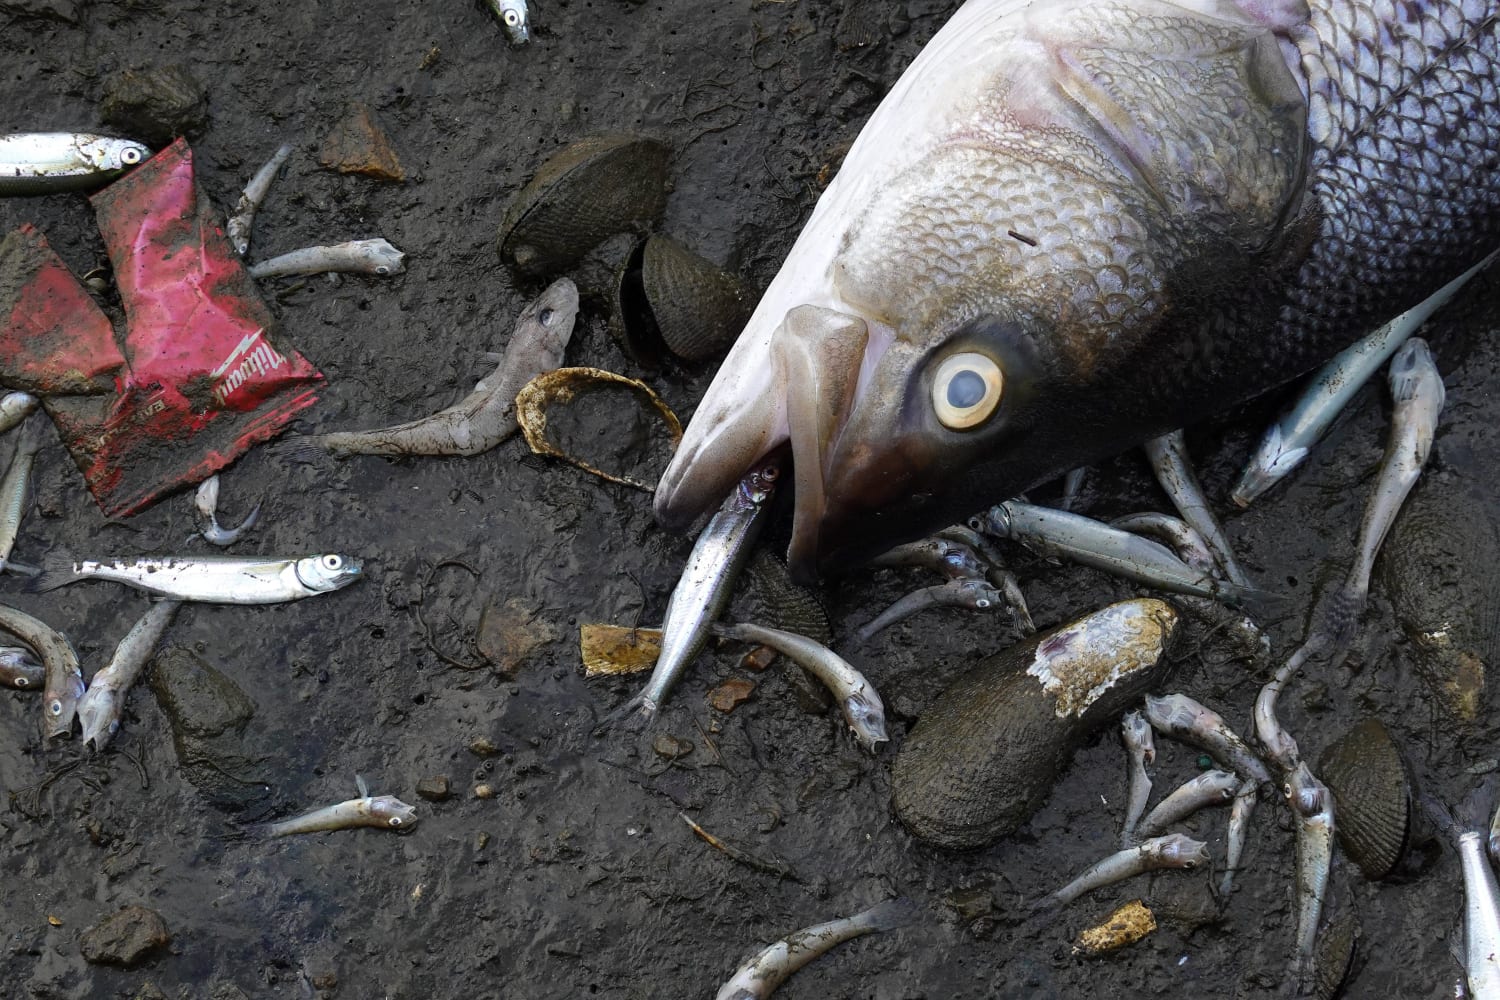 Toxic algae bloom kills off fish around San Francisco Bay